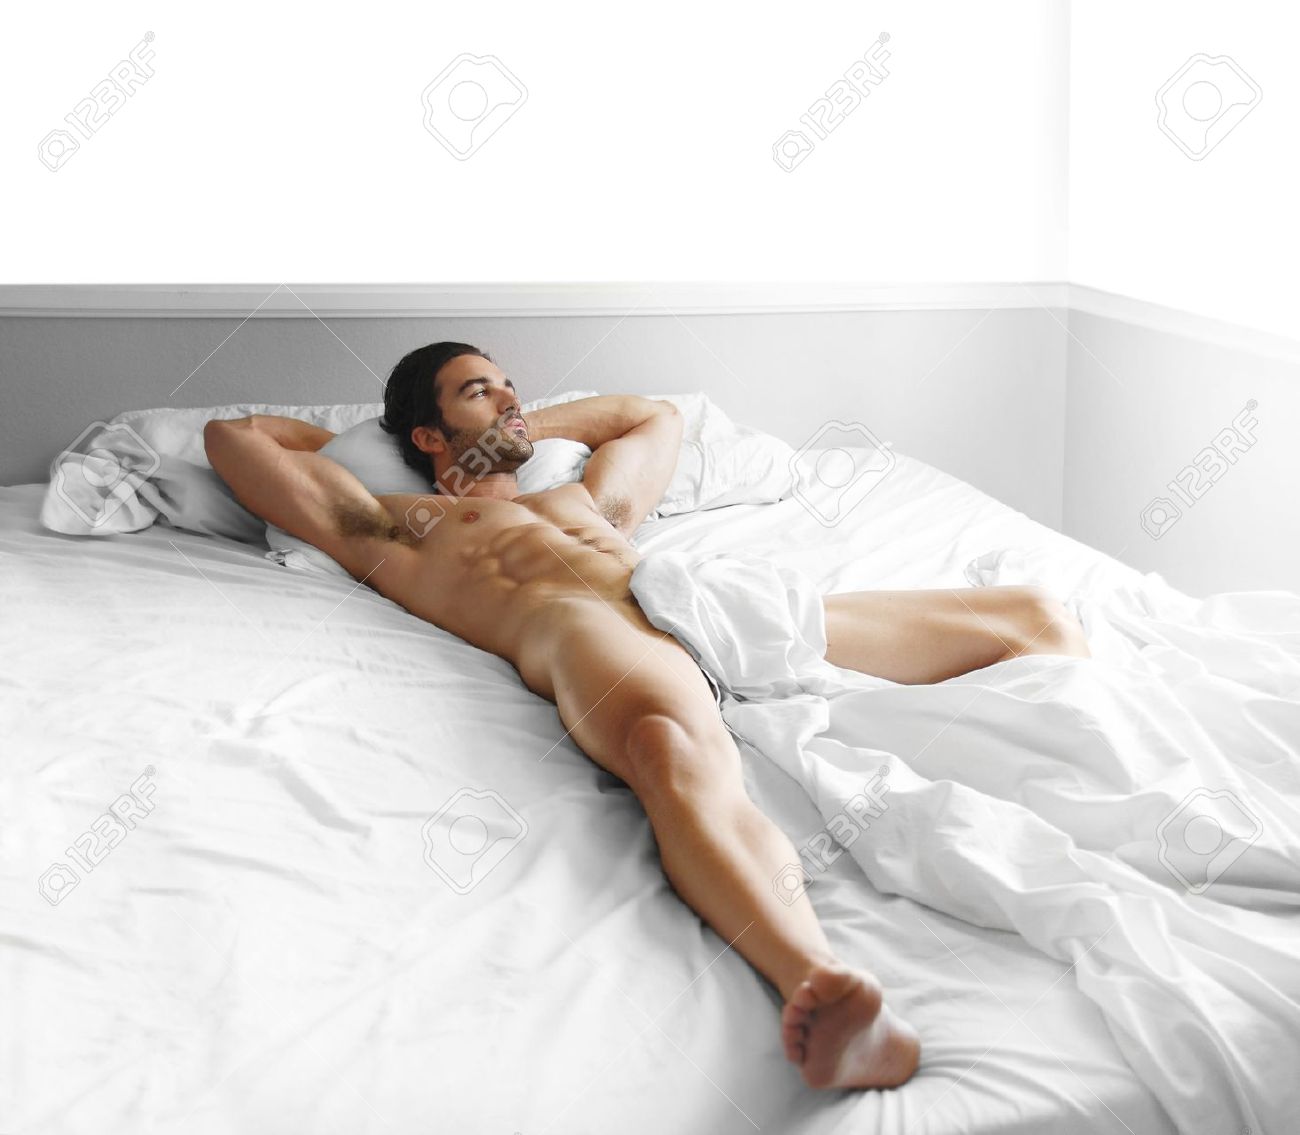 dinil kumar share gorgeous nude man photos